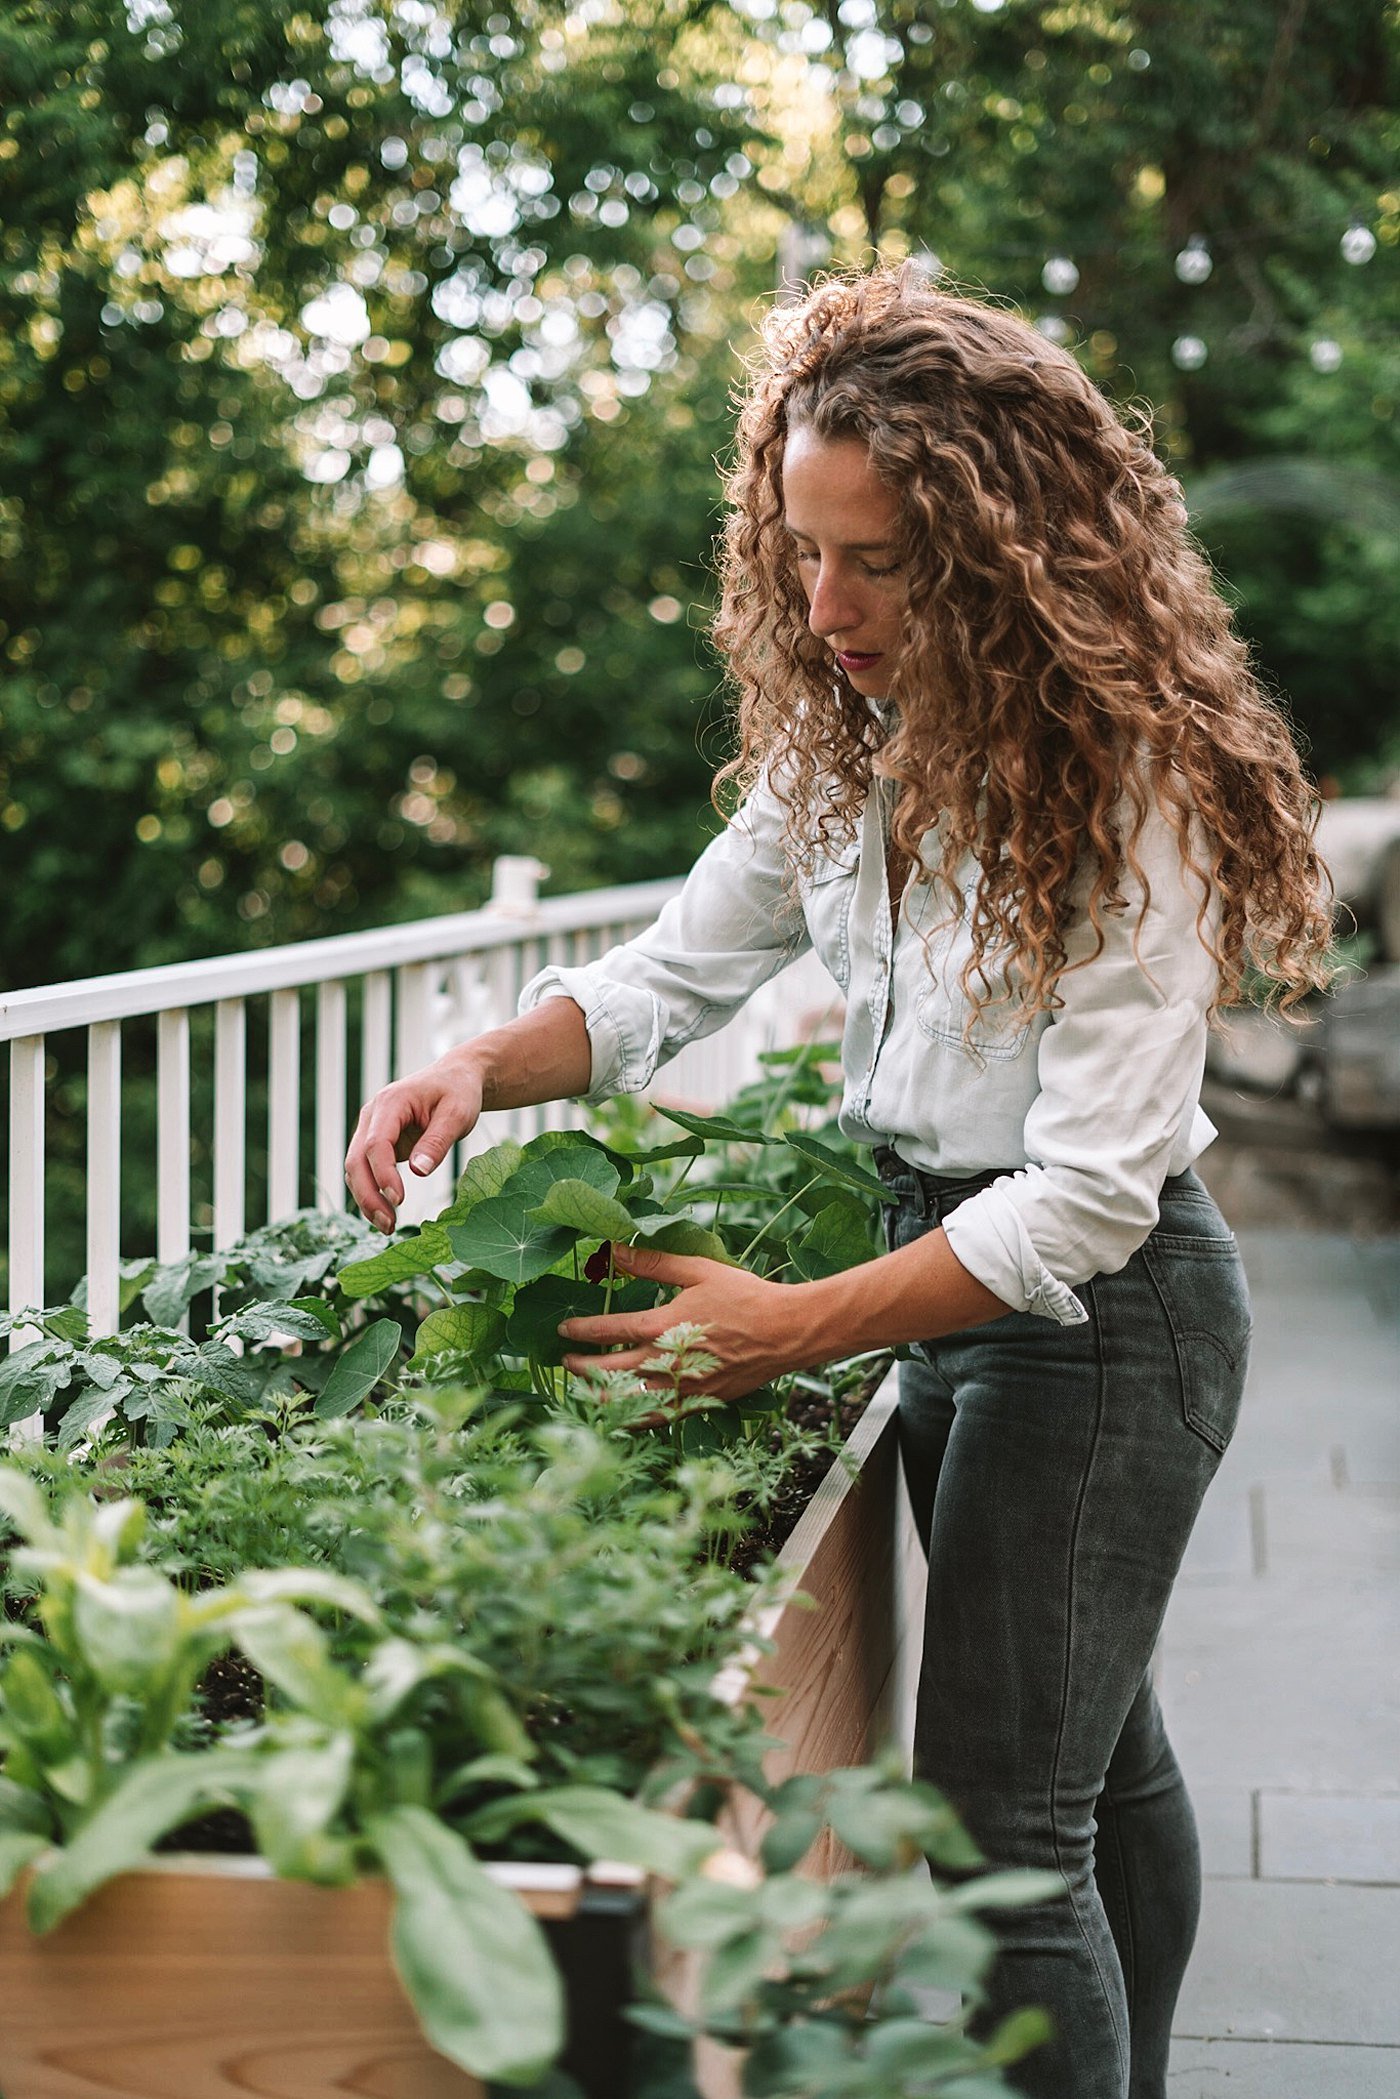 vegetable gardening guide for minnesota